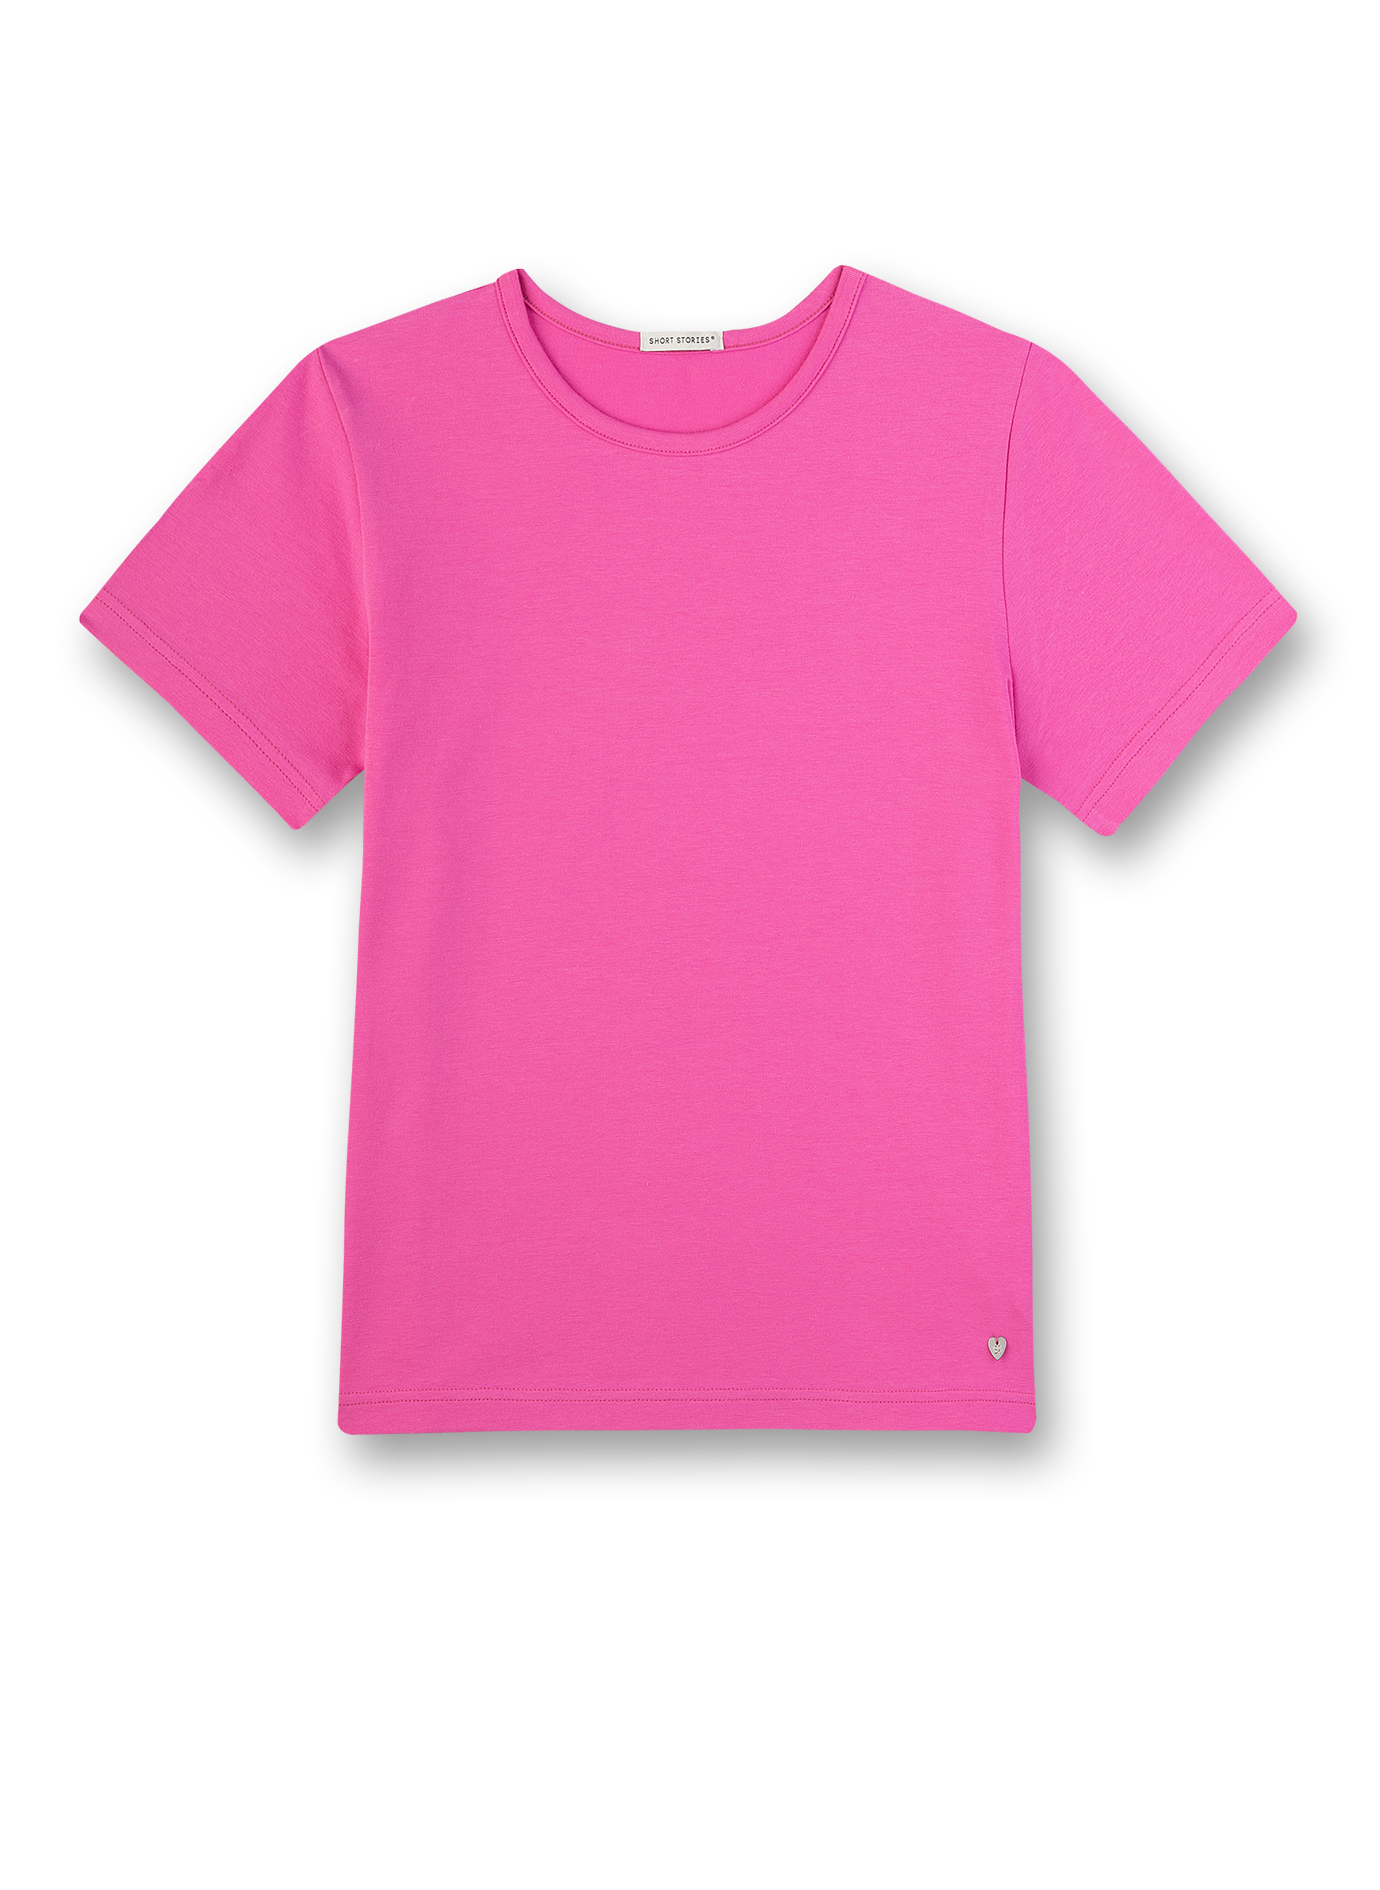 Mädchen T-Shirt Pink